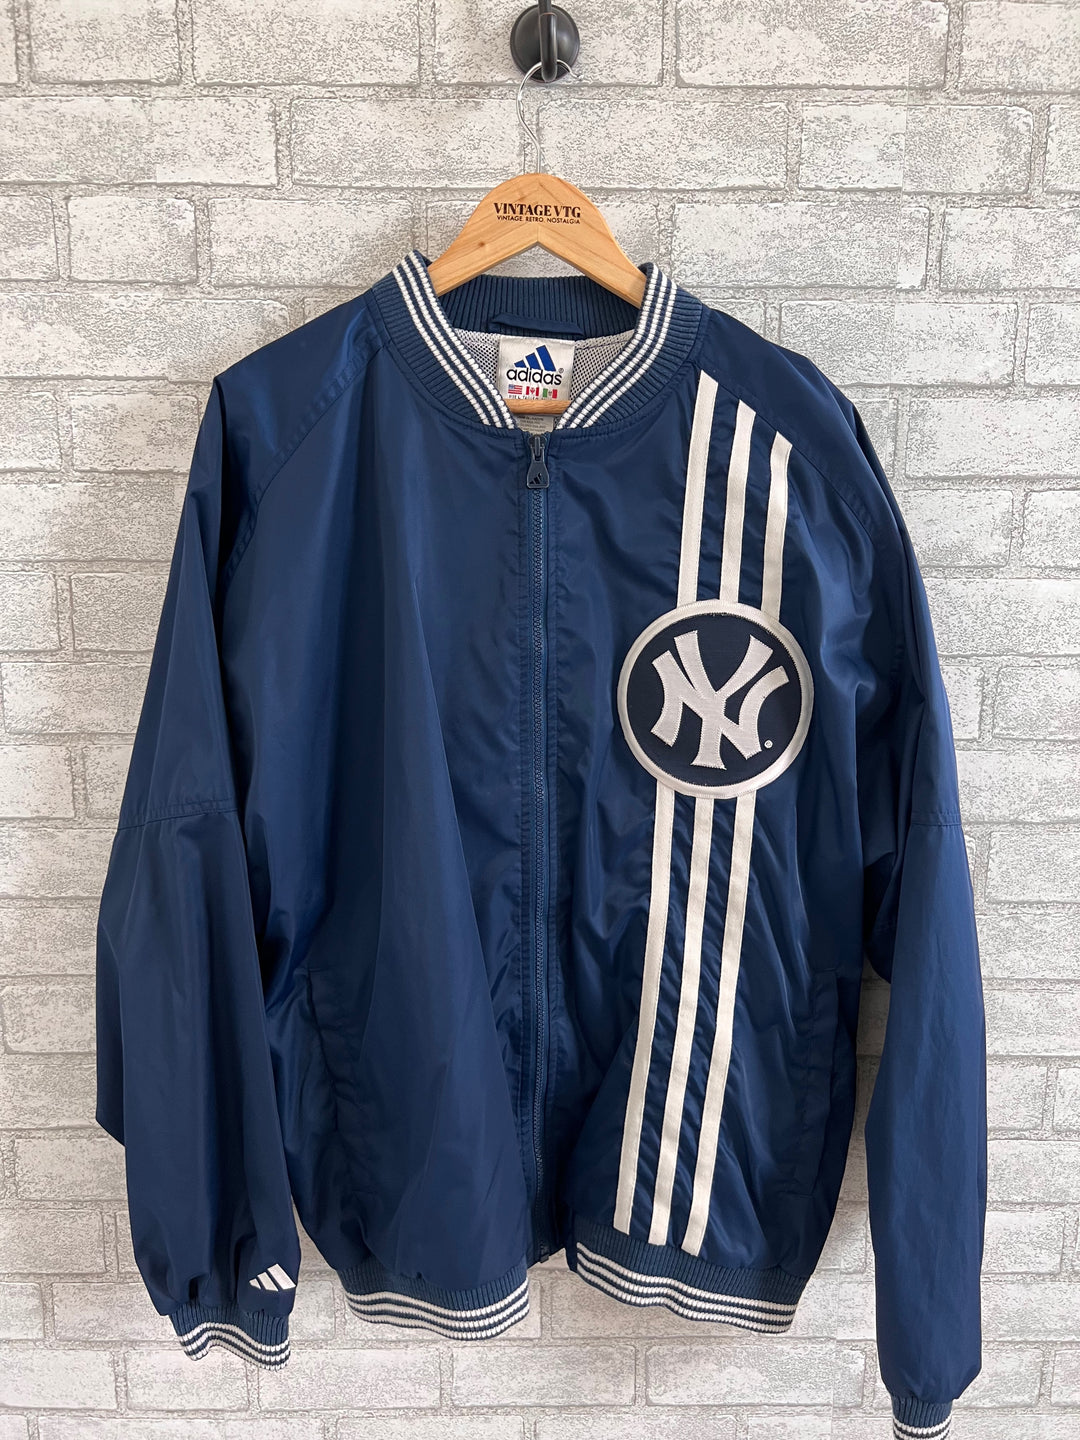 Vintage Adidas X NY Yankees Windbreaker Jacket. Large